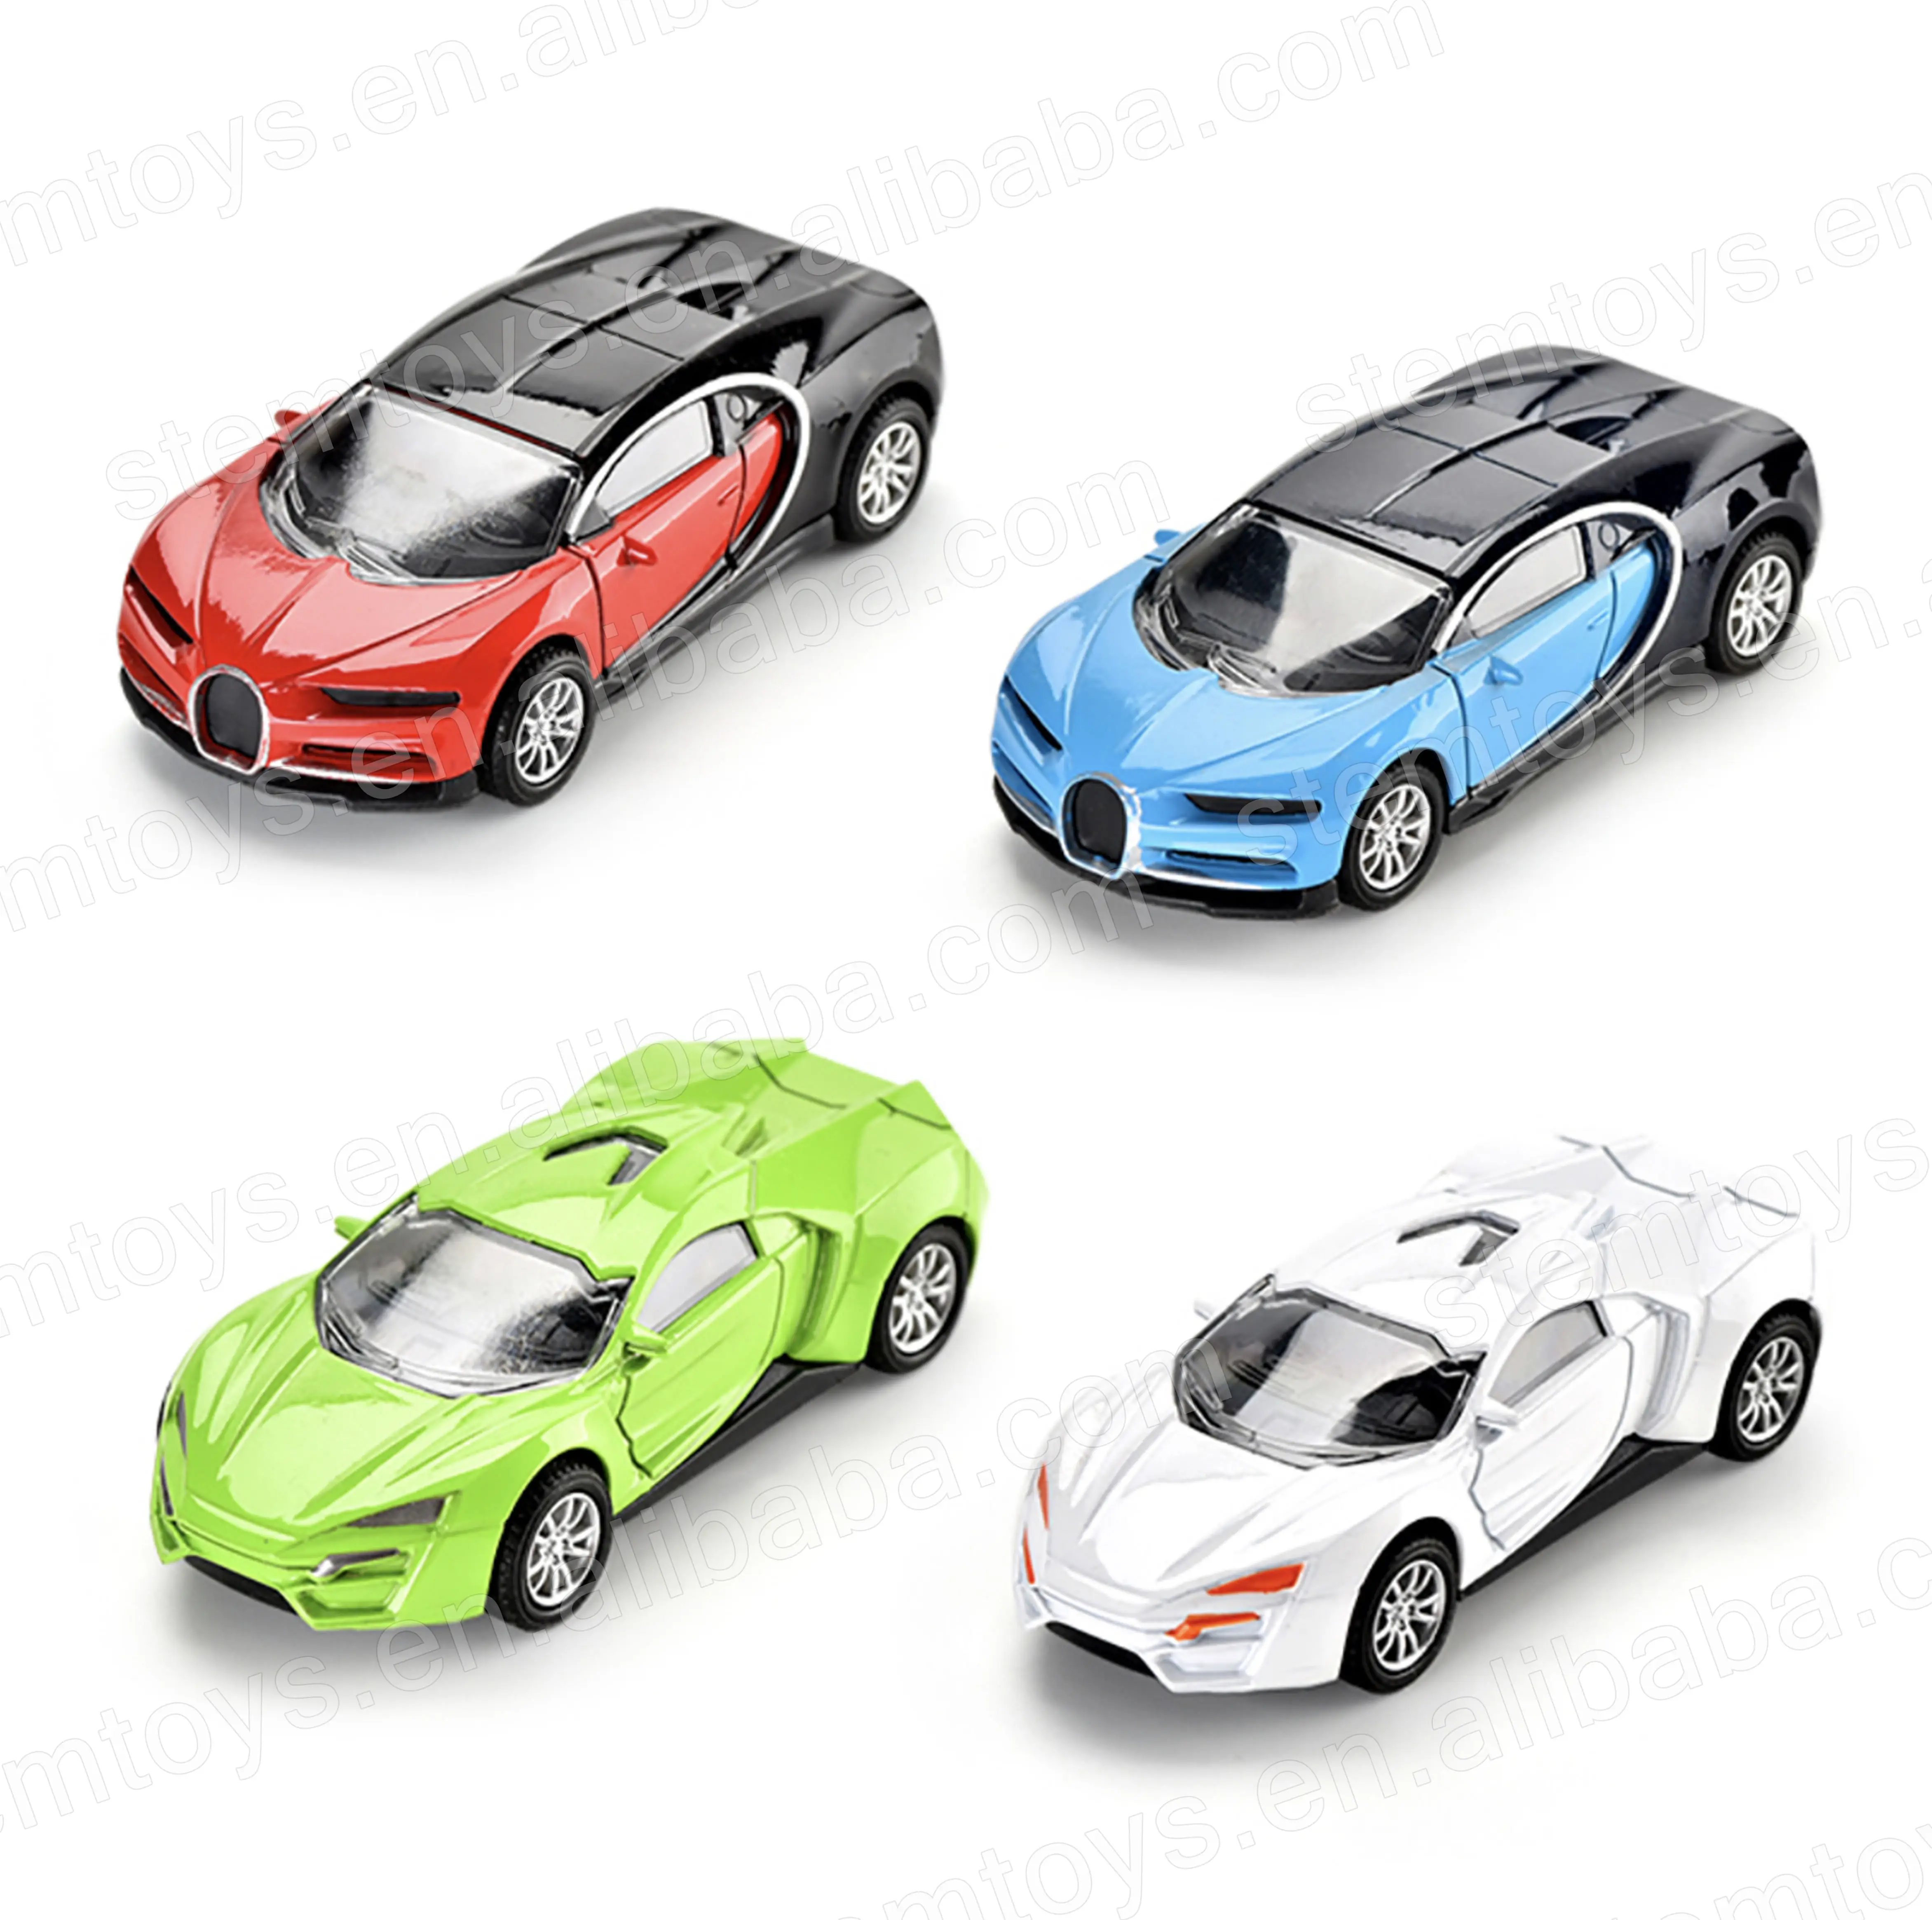 Nuove macchinine vari stili di veicoli auto in lega piccoli Mini giocattoli per bambini in metallo pull-back Cast toys